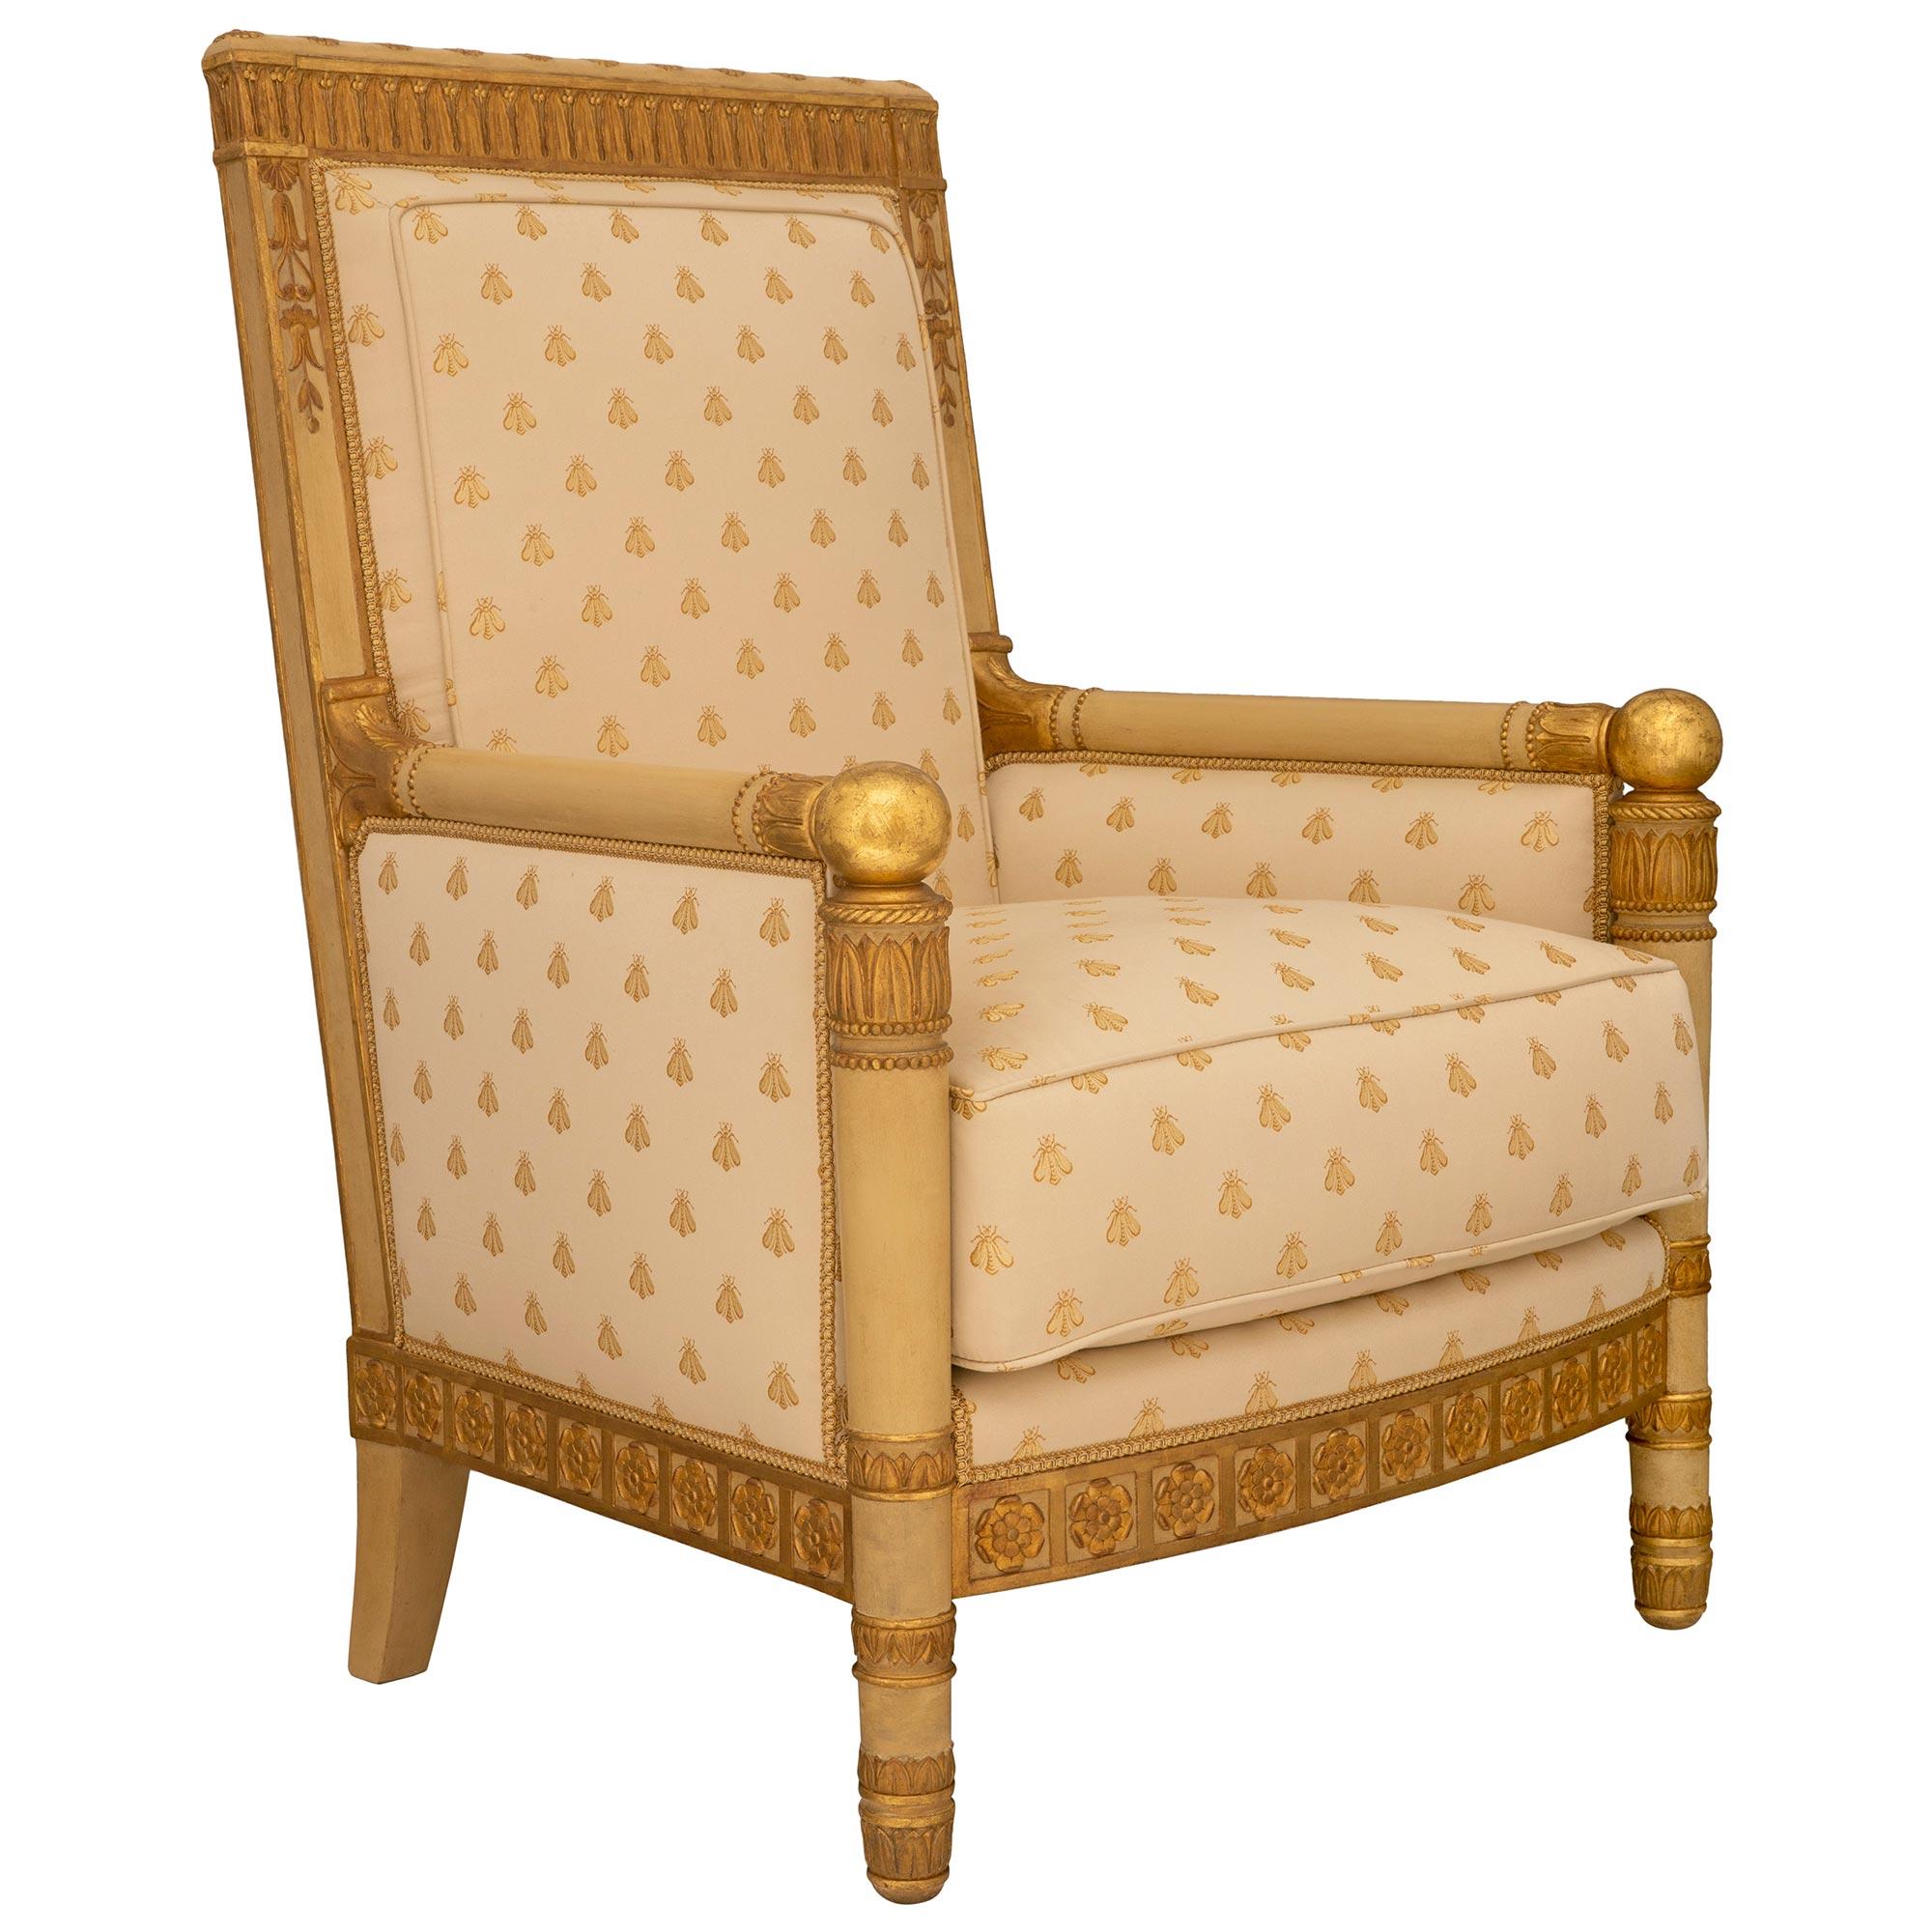 Ein auffallendes Paar französischer Empire-Sessel des 19. Jahrhunderts aus patiniertem Holz und Giltwood. Das Paar Thronsessel steht auf eindrucksvollen, köcherartigen, kreisförmig verjüngten Beinen mit eleganten vergoldeten Palmetten und